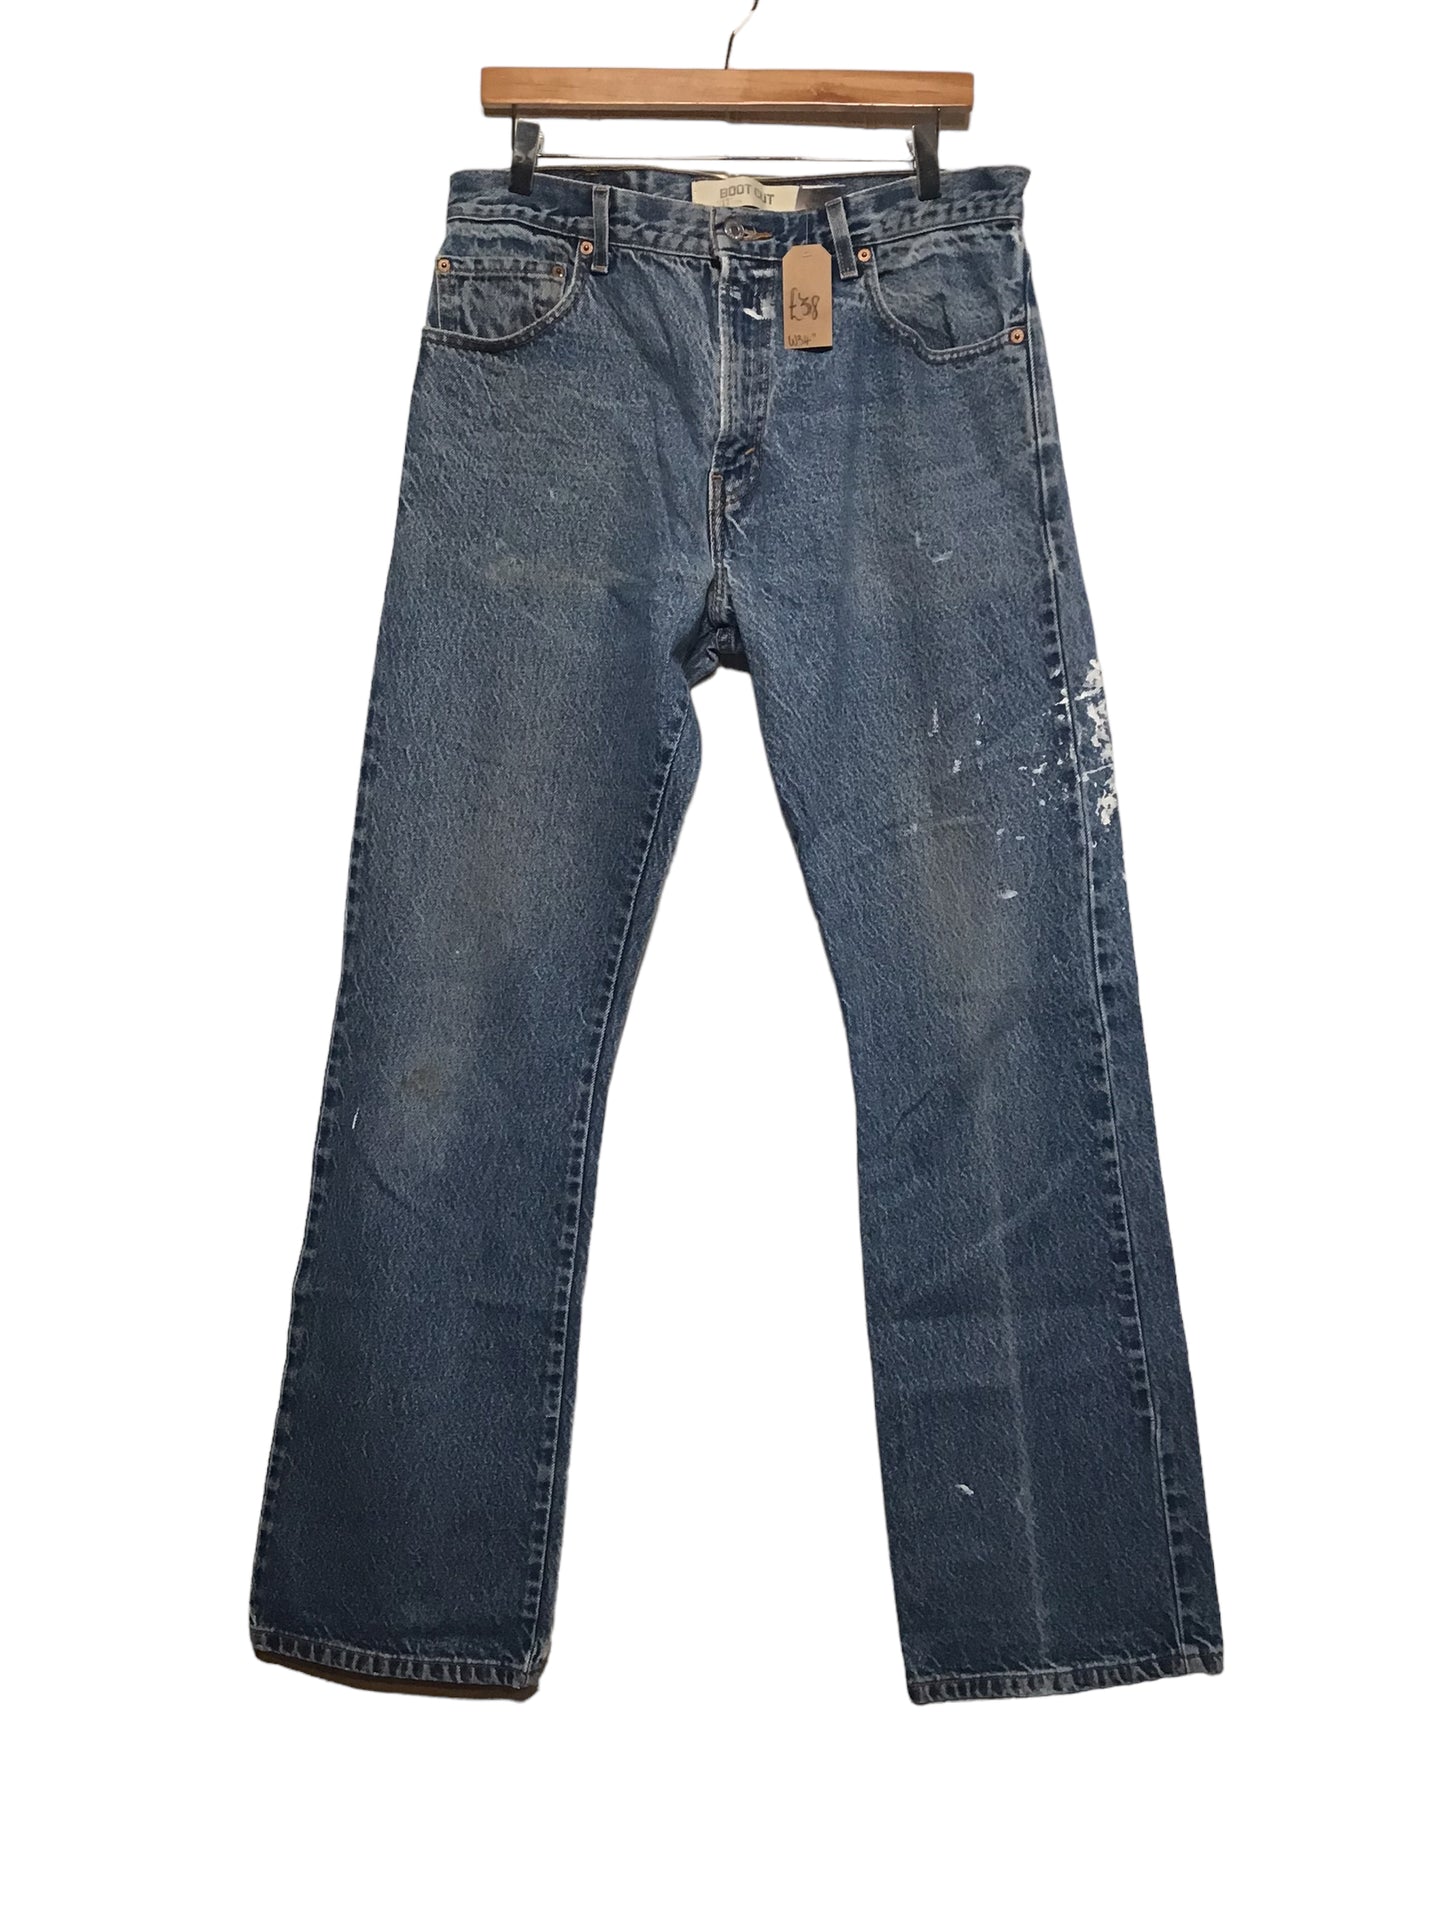 Levi 517 Jeans (34x34)